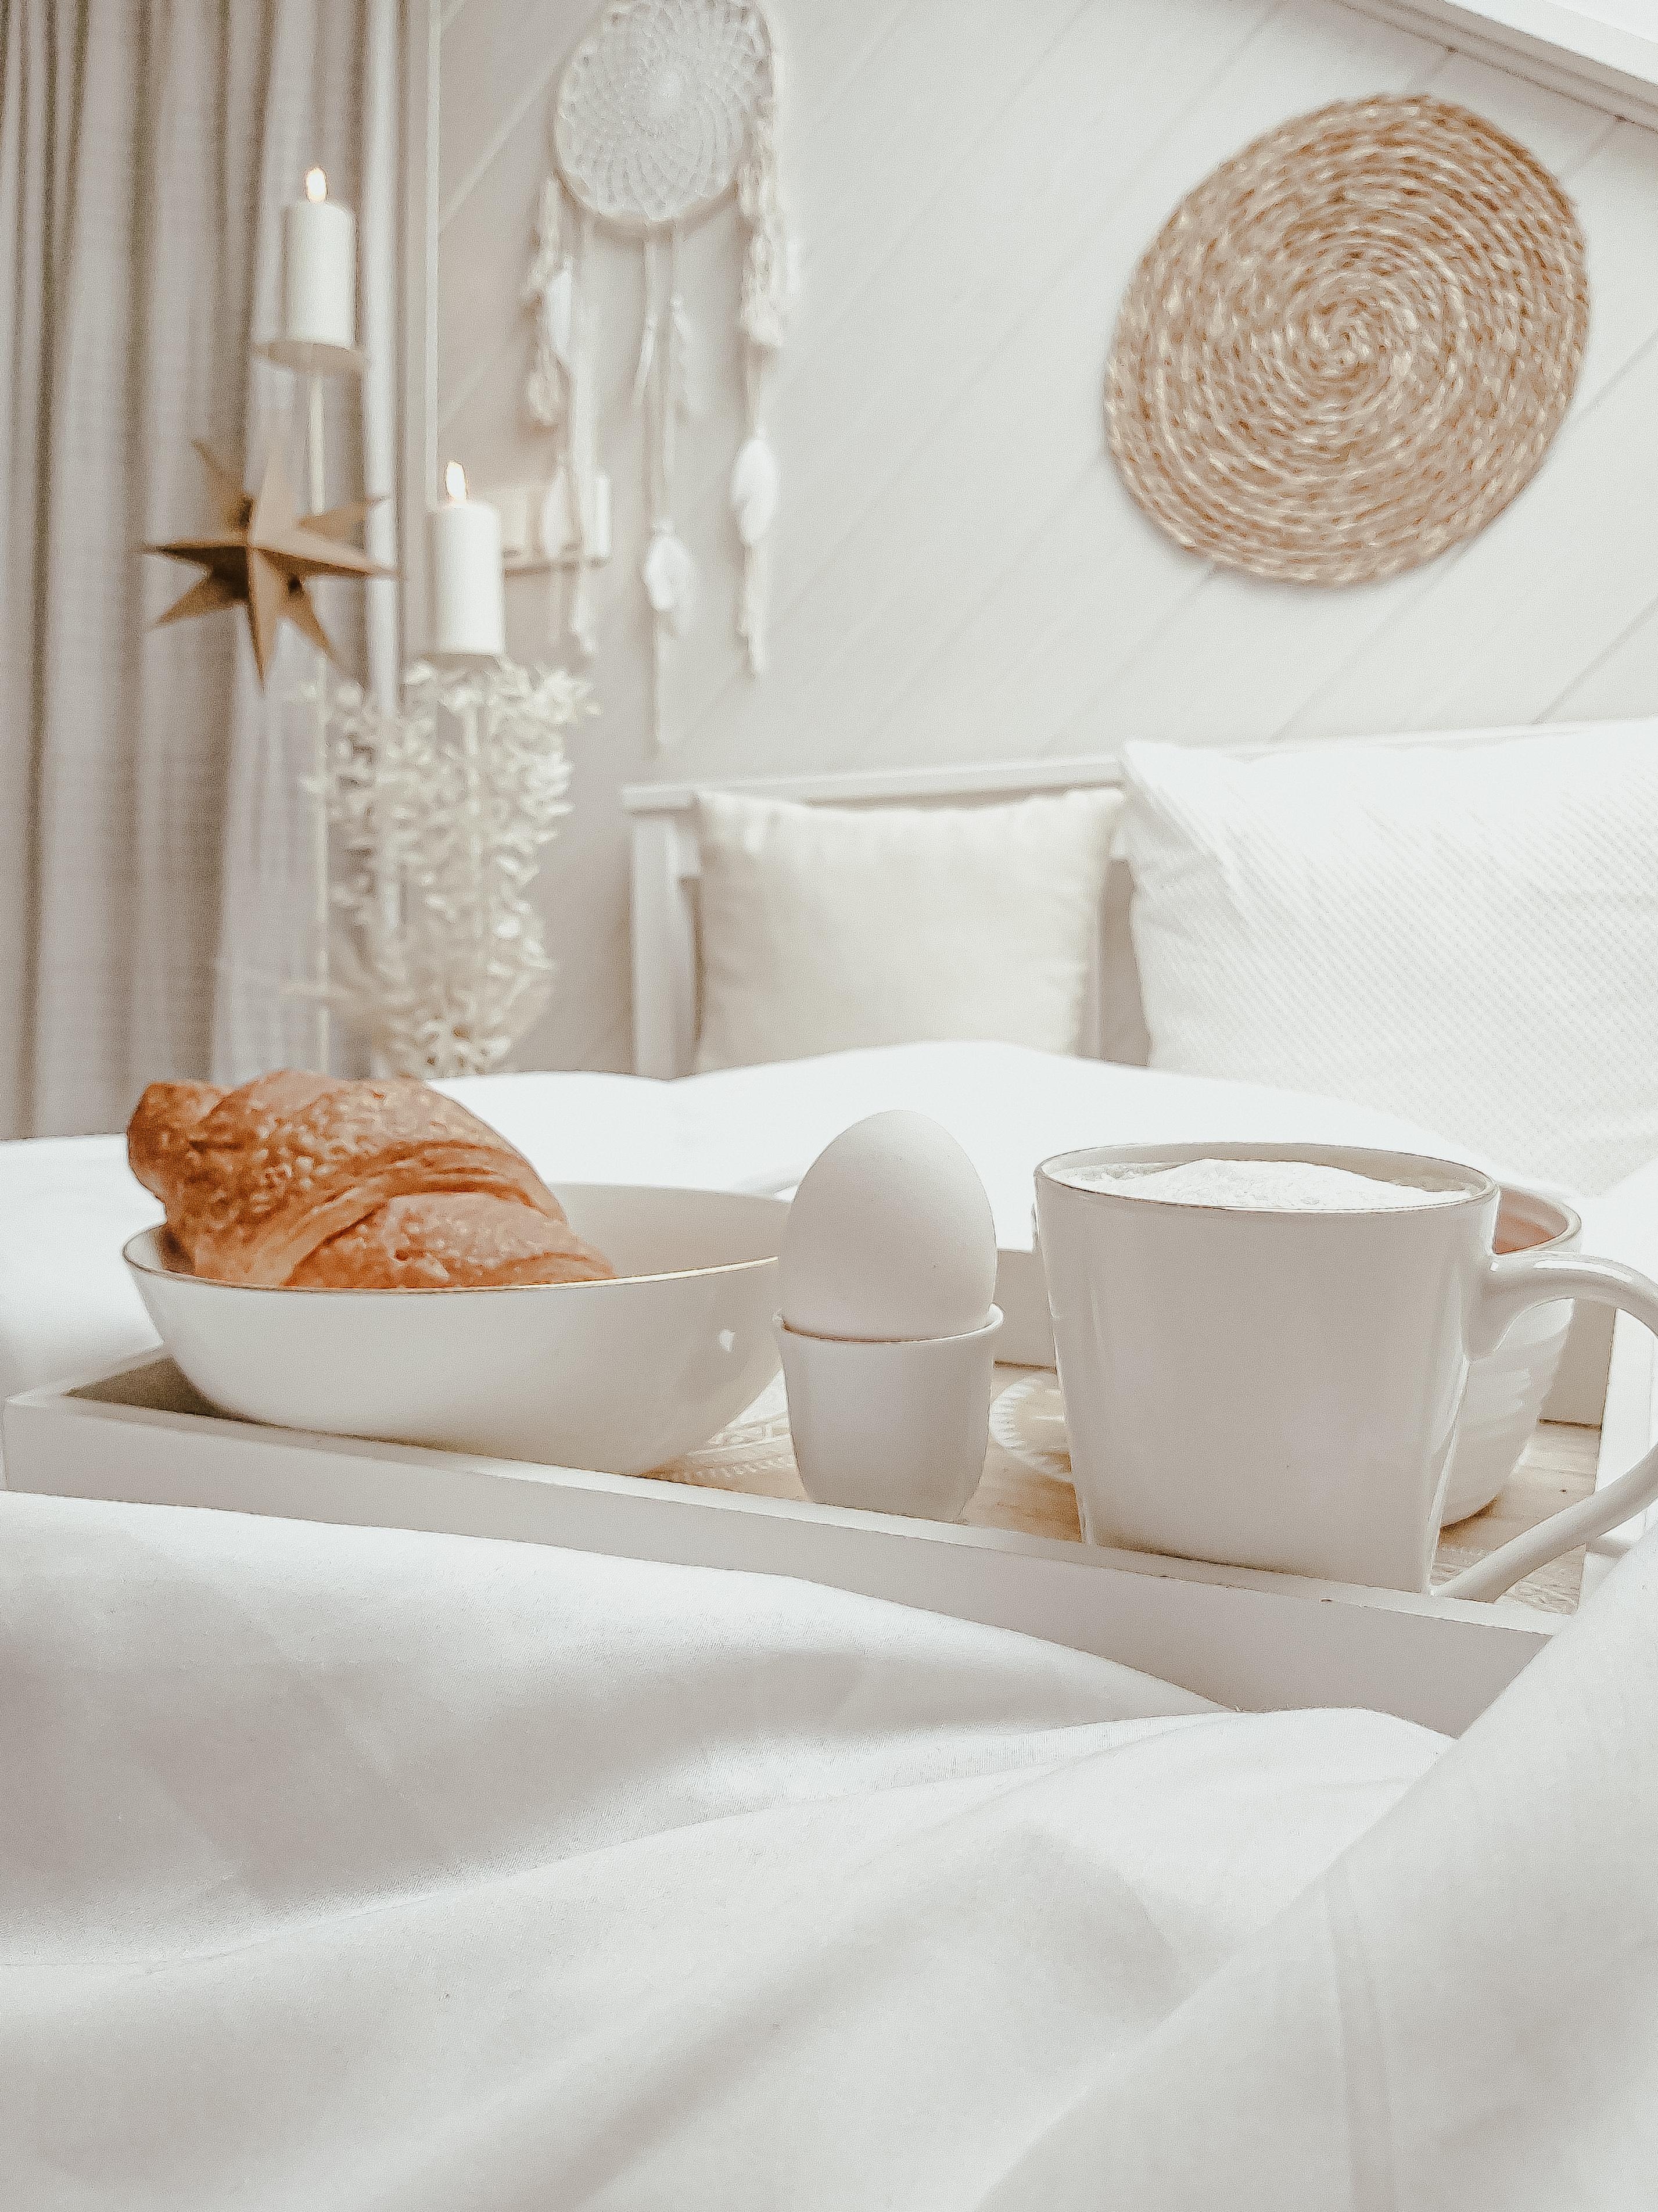 #sundays #morgenstimmung #weihnachtsdeko #hygge #coffee #breakfast #whiteliving #frühstück #couchliebt 